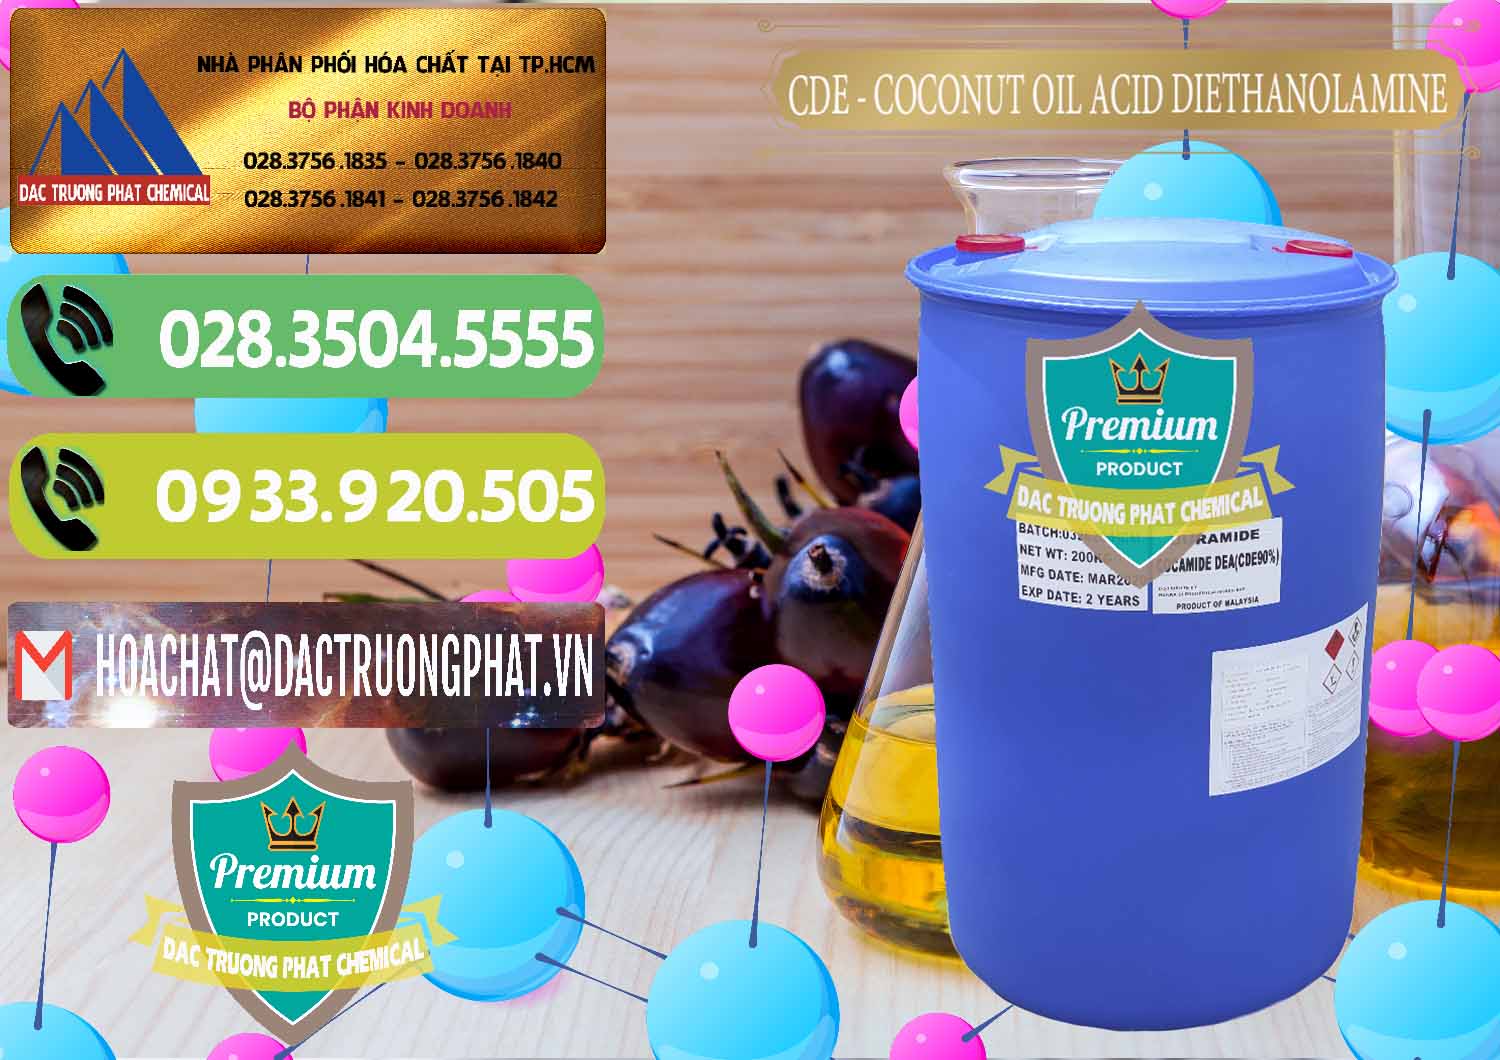 Công ty nhập khẩu và bán CDE - Coconut Oil Acid Diethanolamine Mã Lai Malaysia - 0311 - Công ty chuyên kinh doanh và phân phối hóa chất tại TP.HCM - hoachatmientay.vn